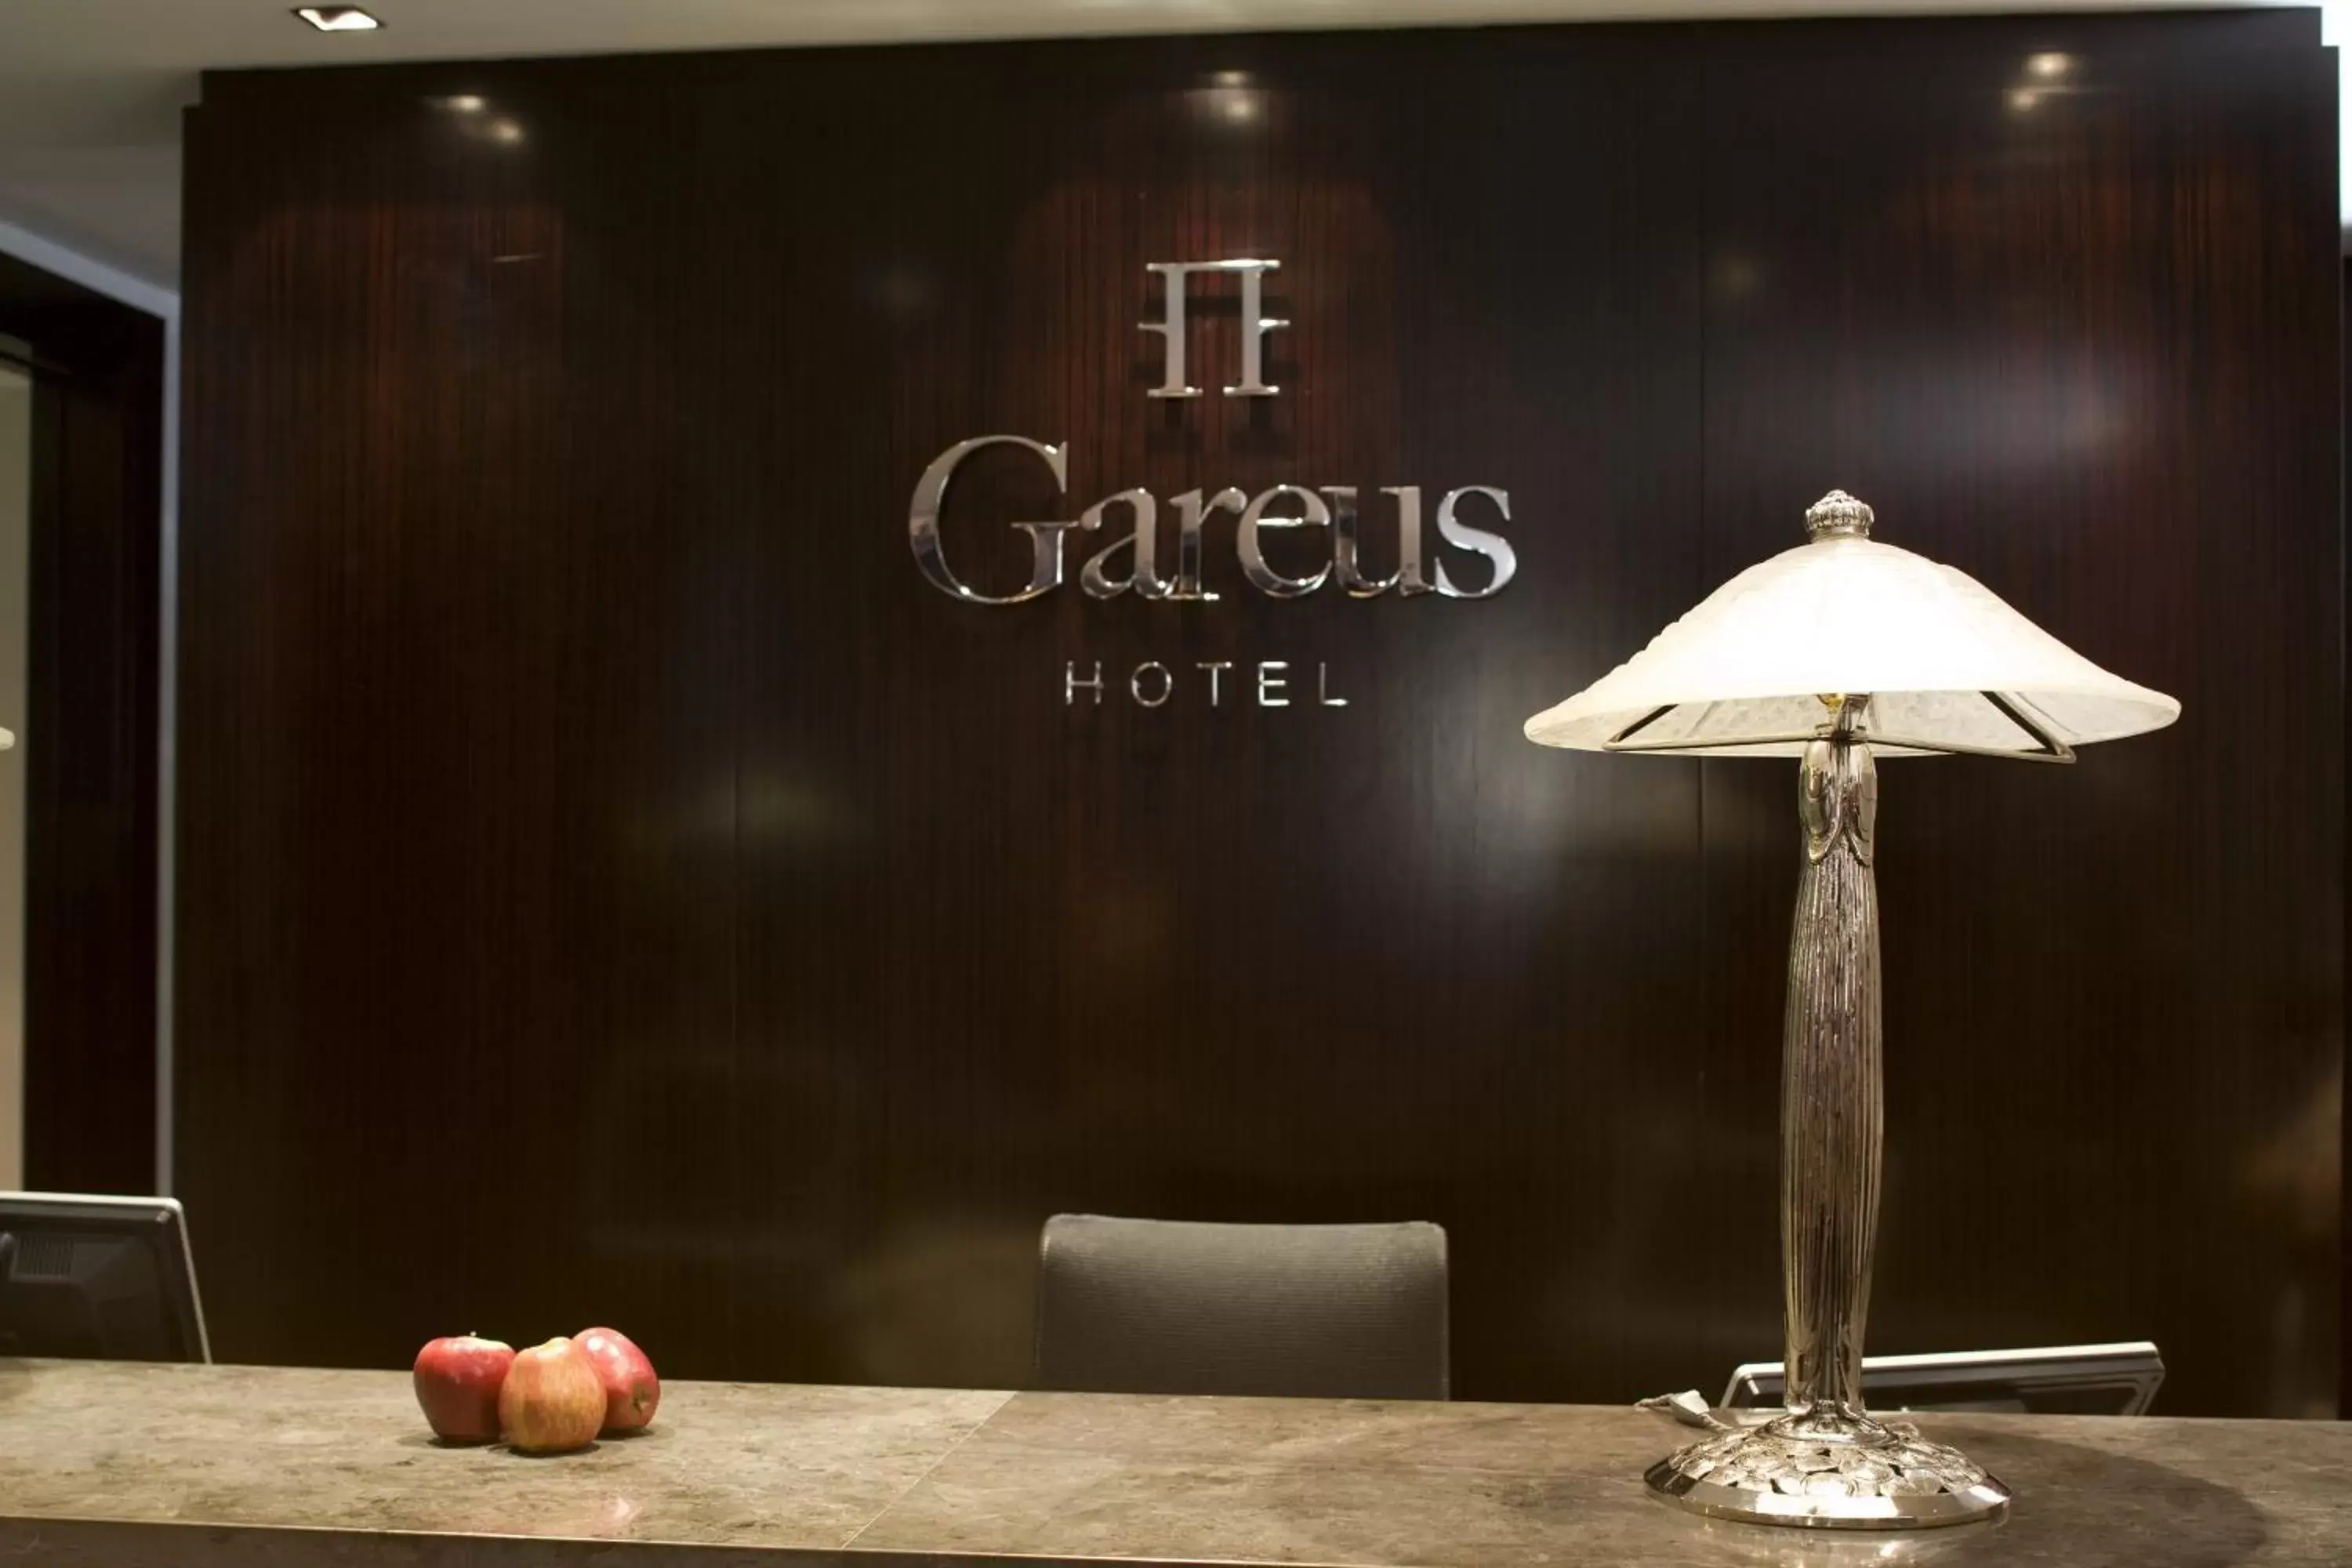 Lobby or reception in Hotel Boutique Gareus